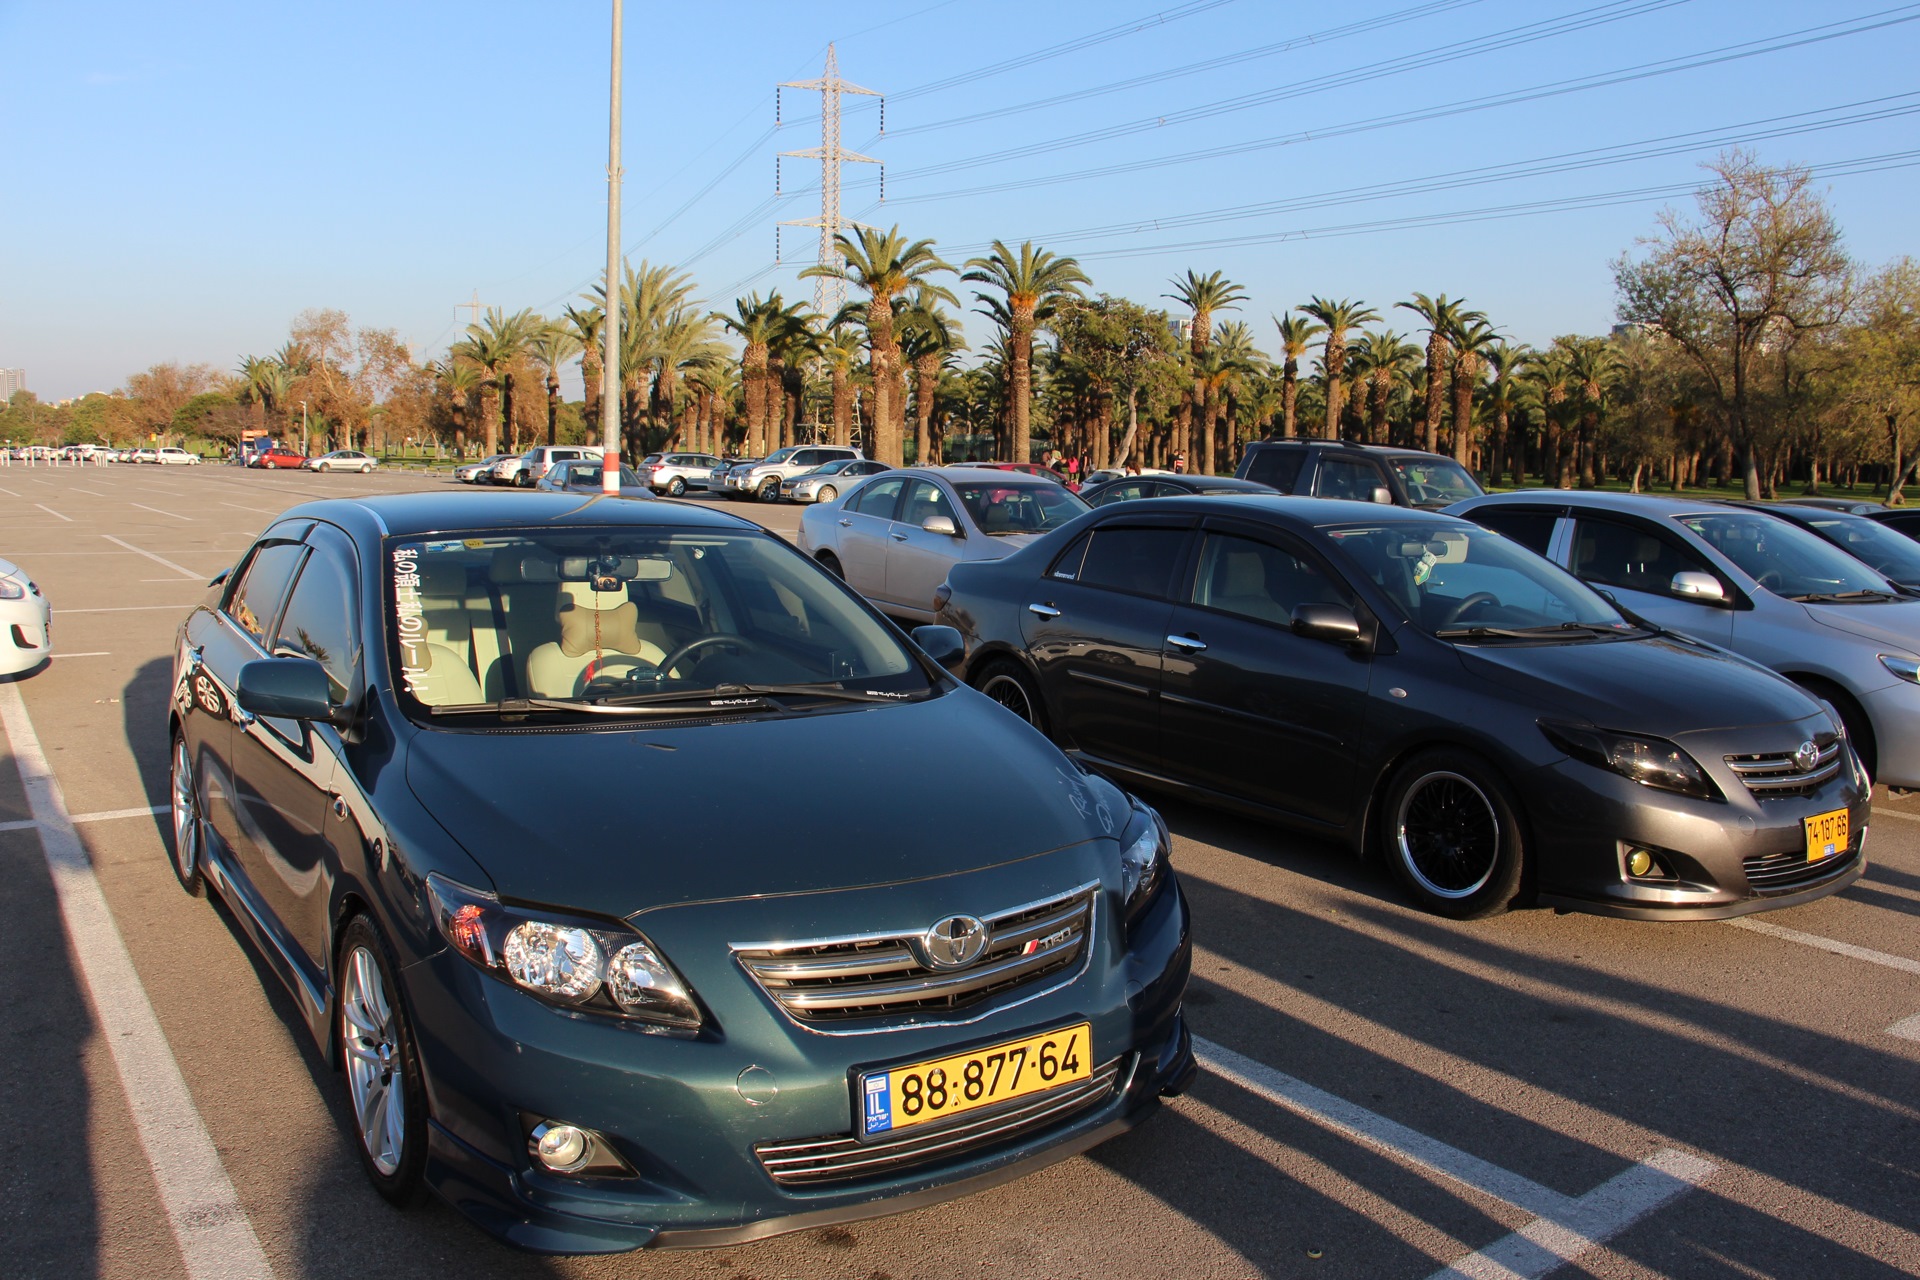 Пдд в израиле в  2021  году: общая информация для автомобилистов